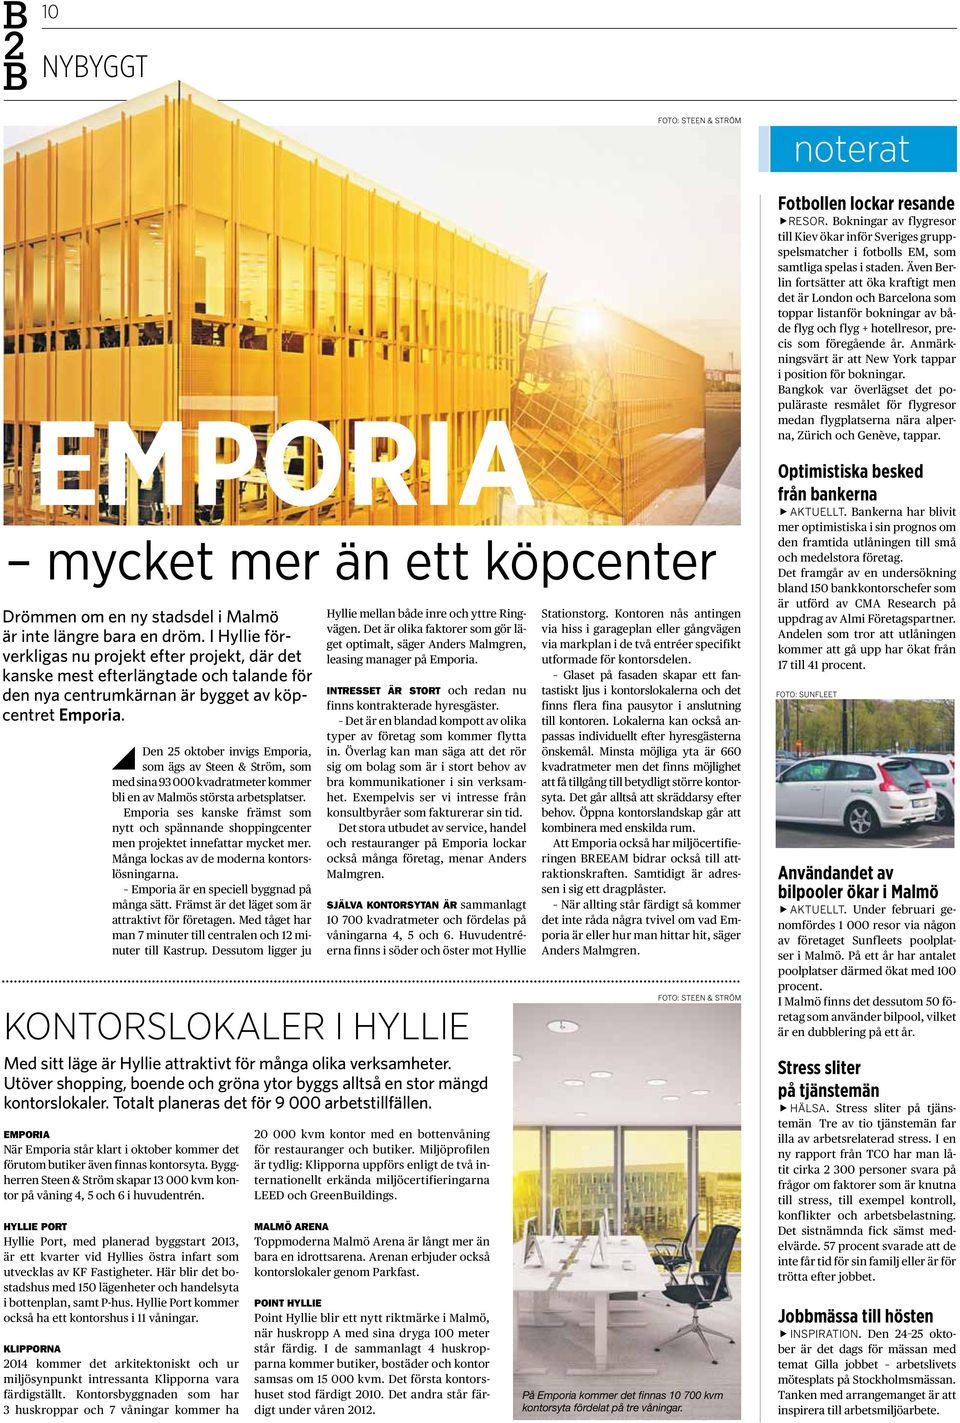 Den 25 oktober invigs Emporia, som ägs av Steen & Ström, som med sina 93 000 kvadratmeter kommer bli en av Malmös största arbetsplatser.